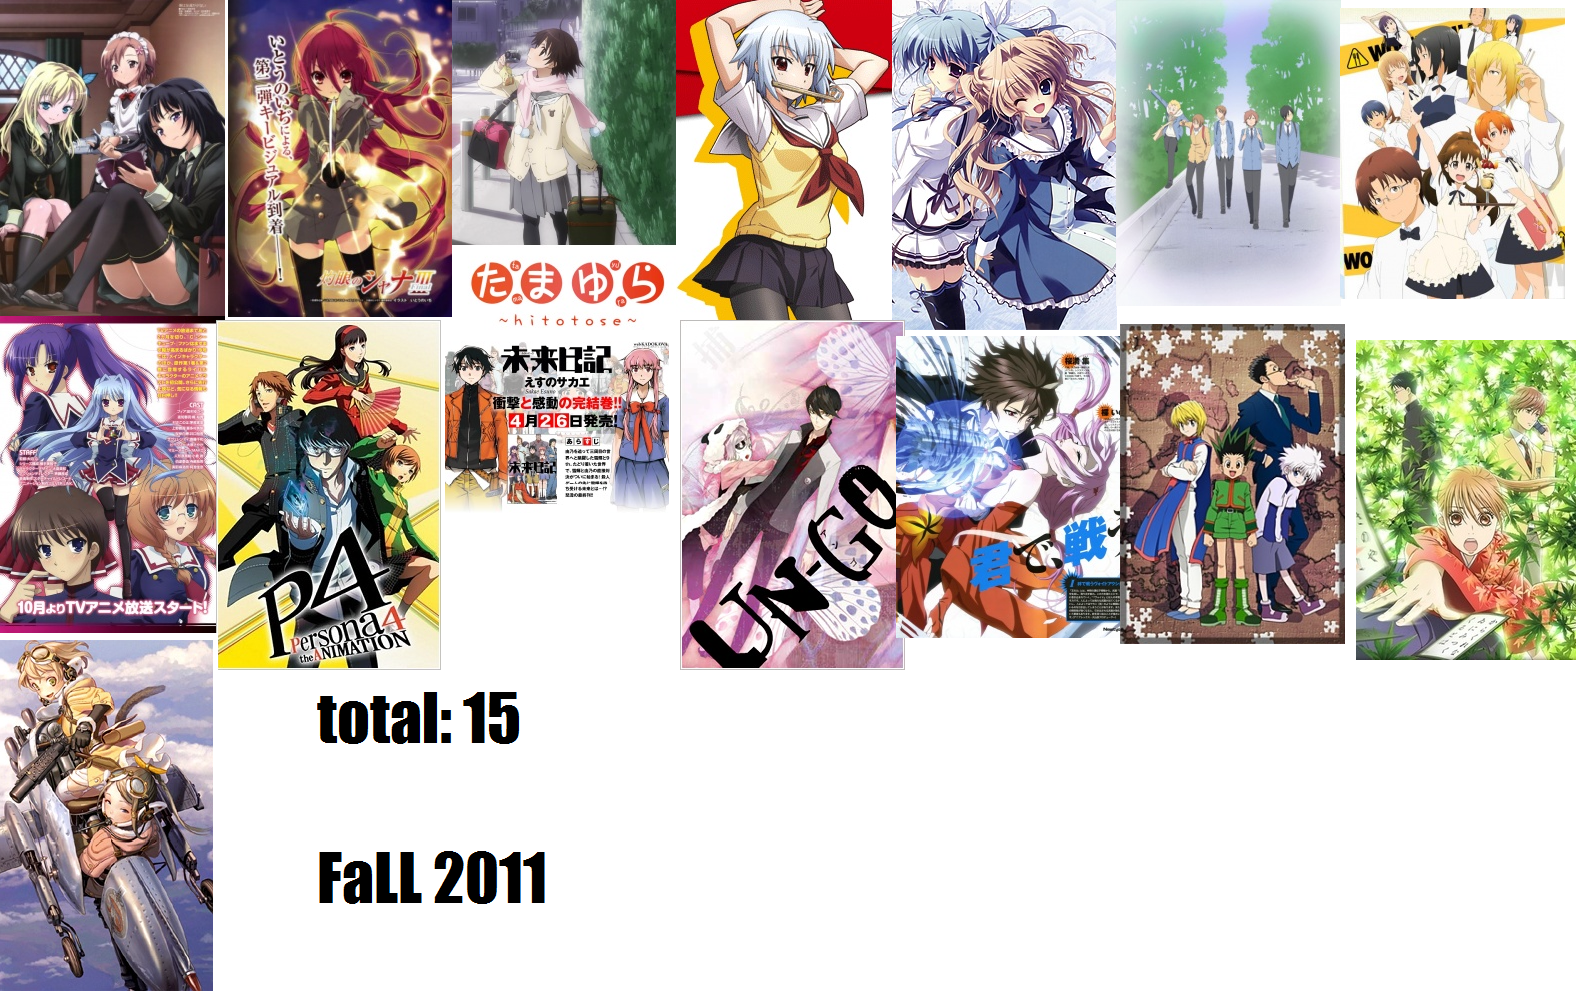 Anime 2011 Fall